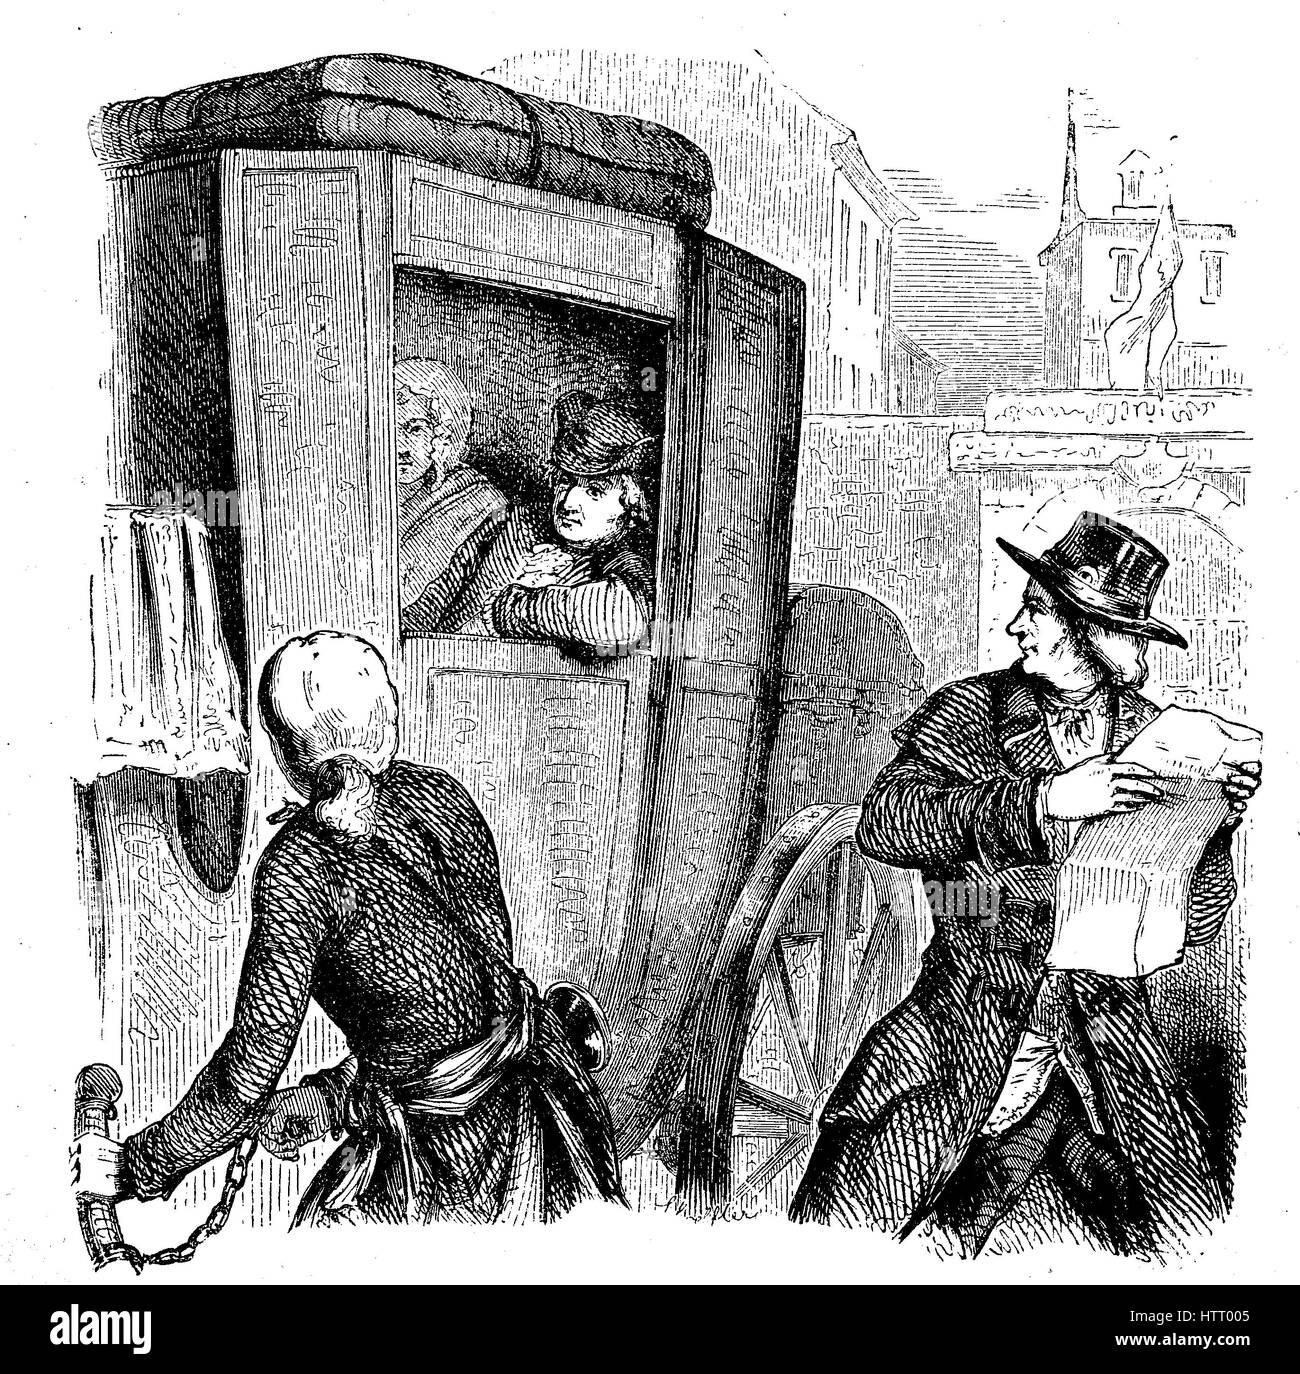 Louis XVI, le 23 août 1754 - 21 janvier 1793, naissance Louis-Auguste, était aussi connu sous le nom de Louis Capet au cours de la Révolution française, la découverte de l'évasion, la reproduction d'une gravure sur bois à partir de l'année 1880, l'amélioration numérique Banque D'Images